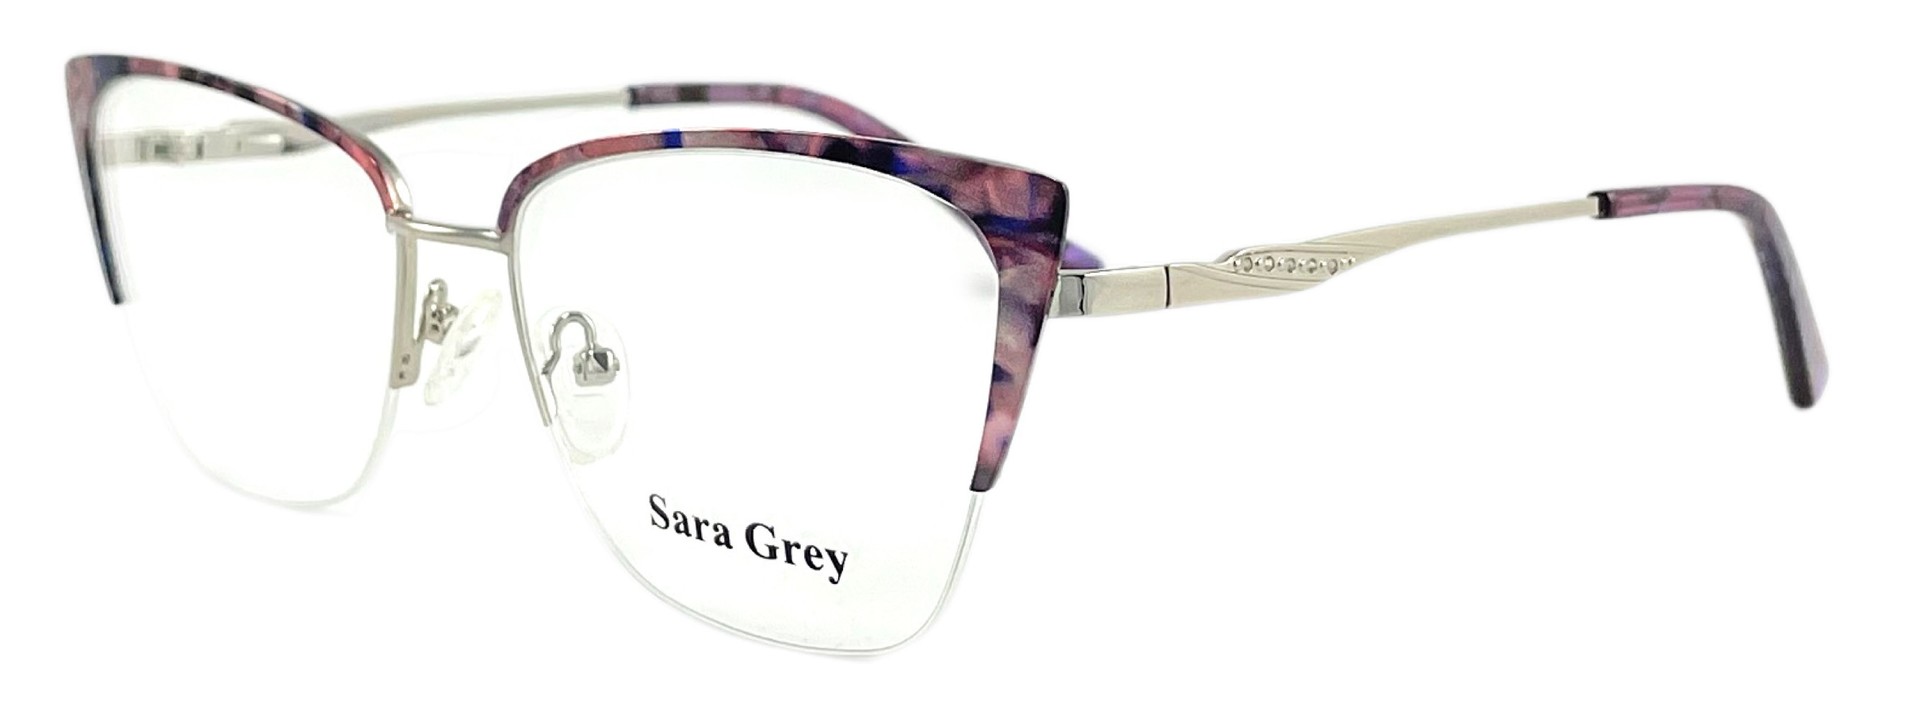 Sara Grey 8446 C4 2